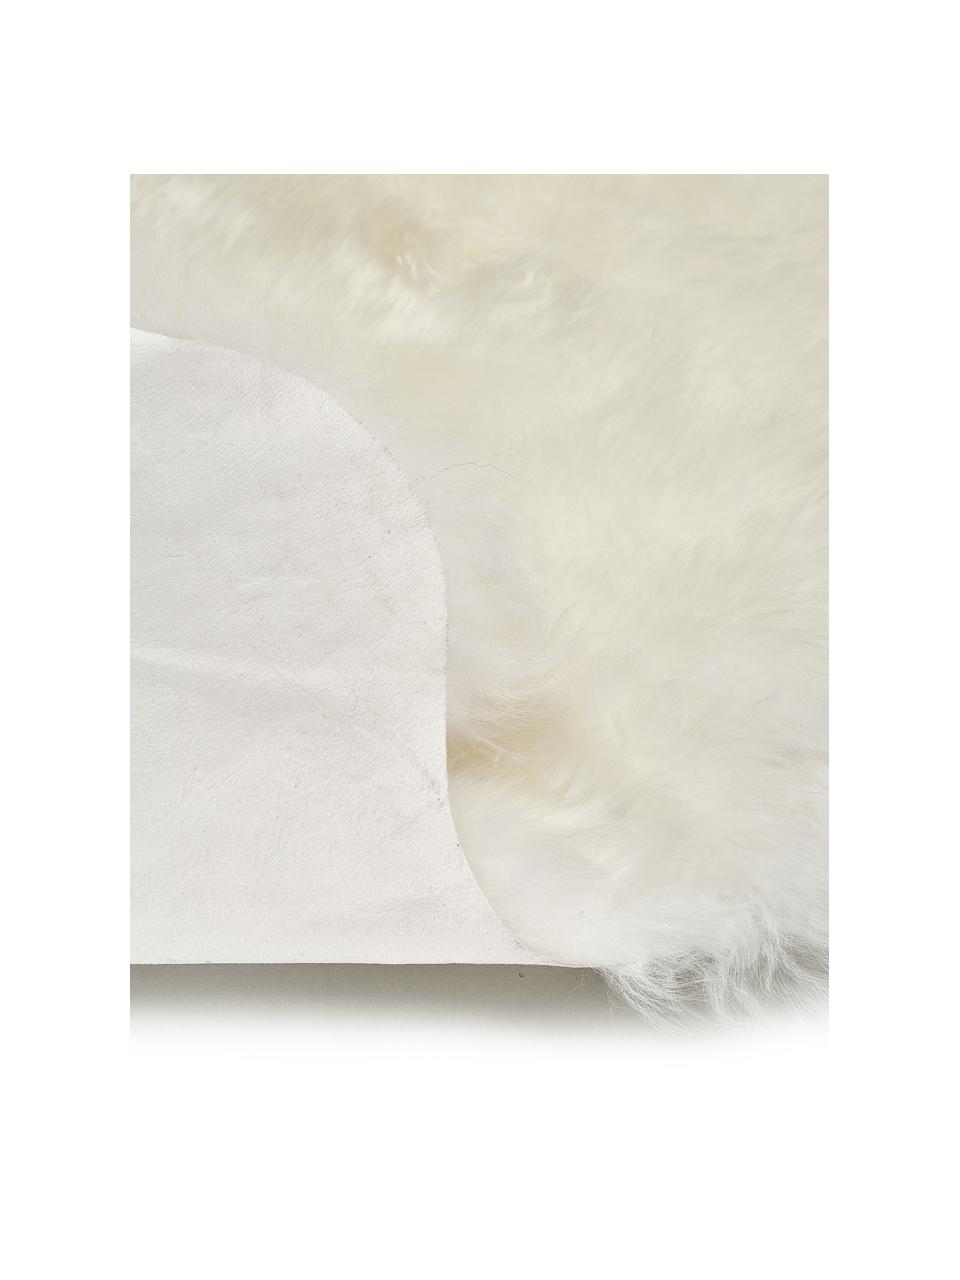 Dywan ze skóry owczej Oslo, gładkie włosie, Kremowobiały, S 60 x D 180 cm